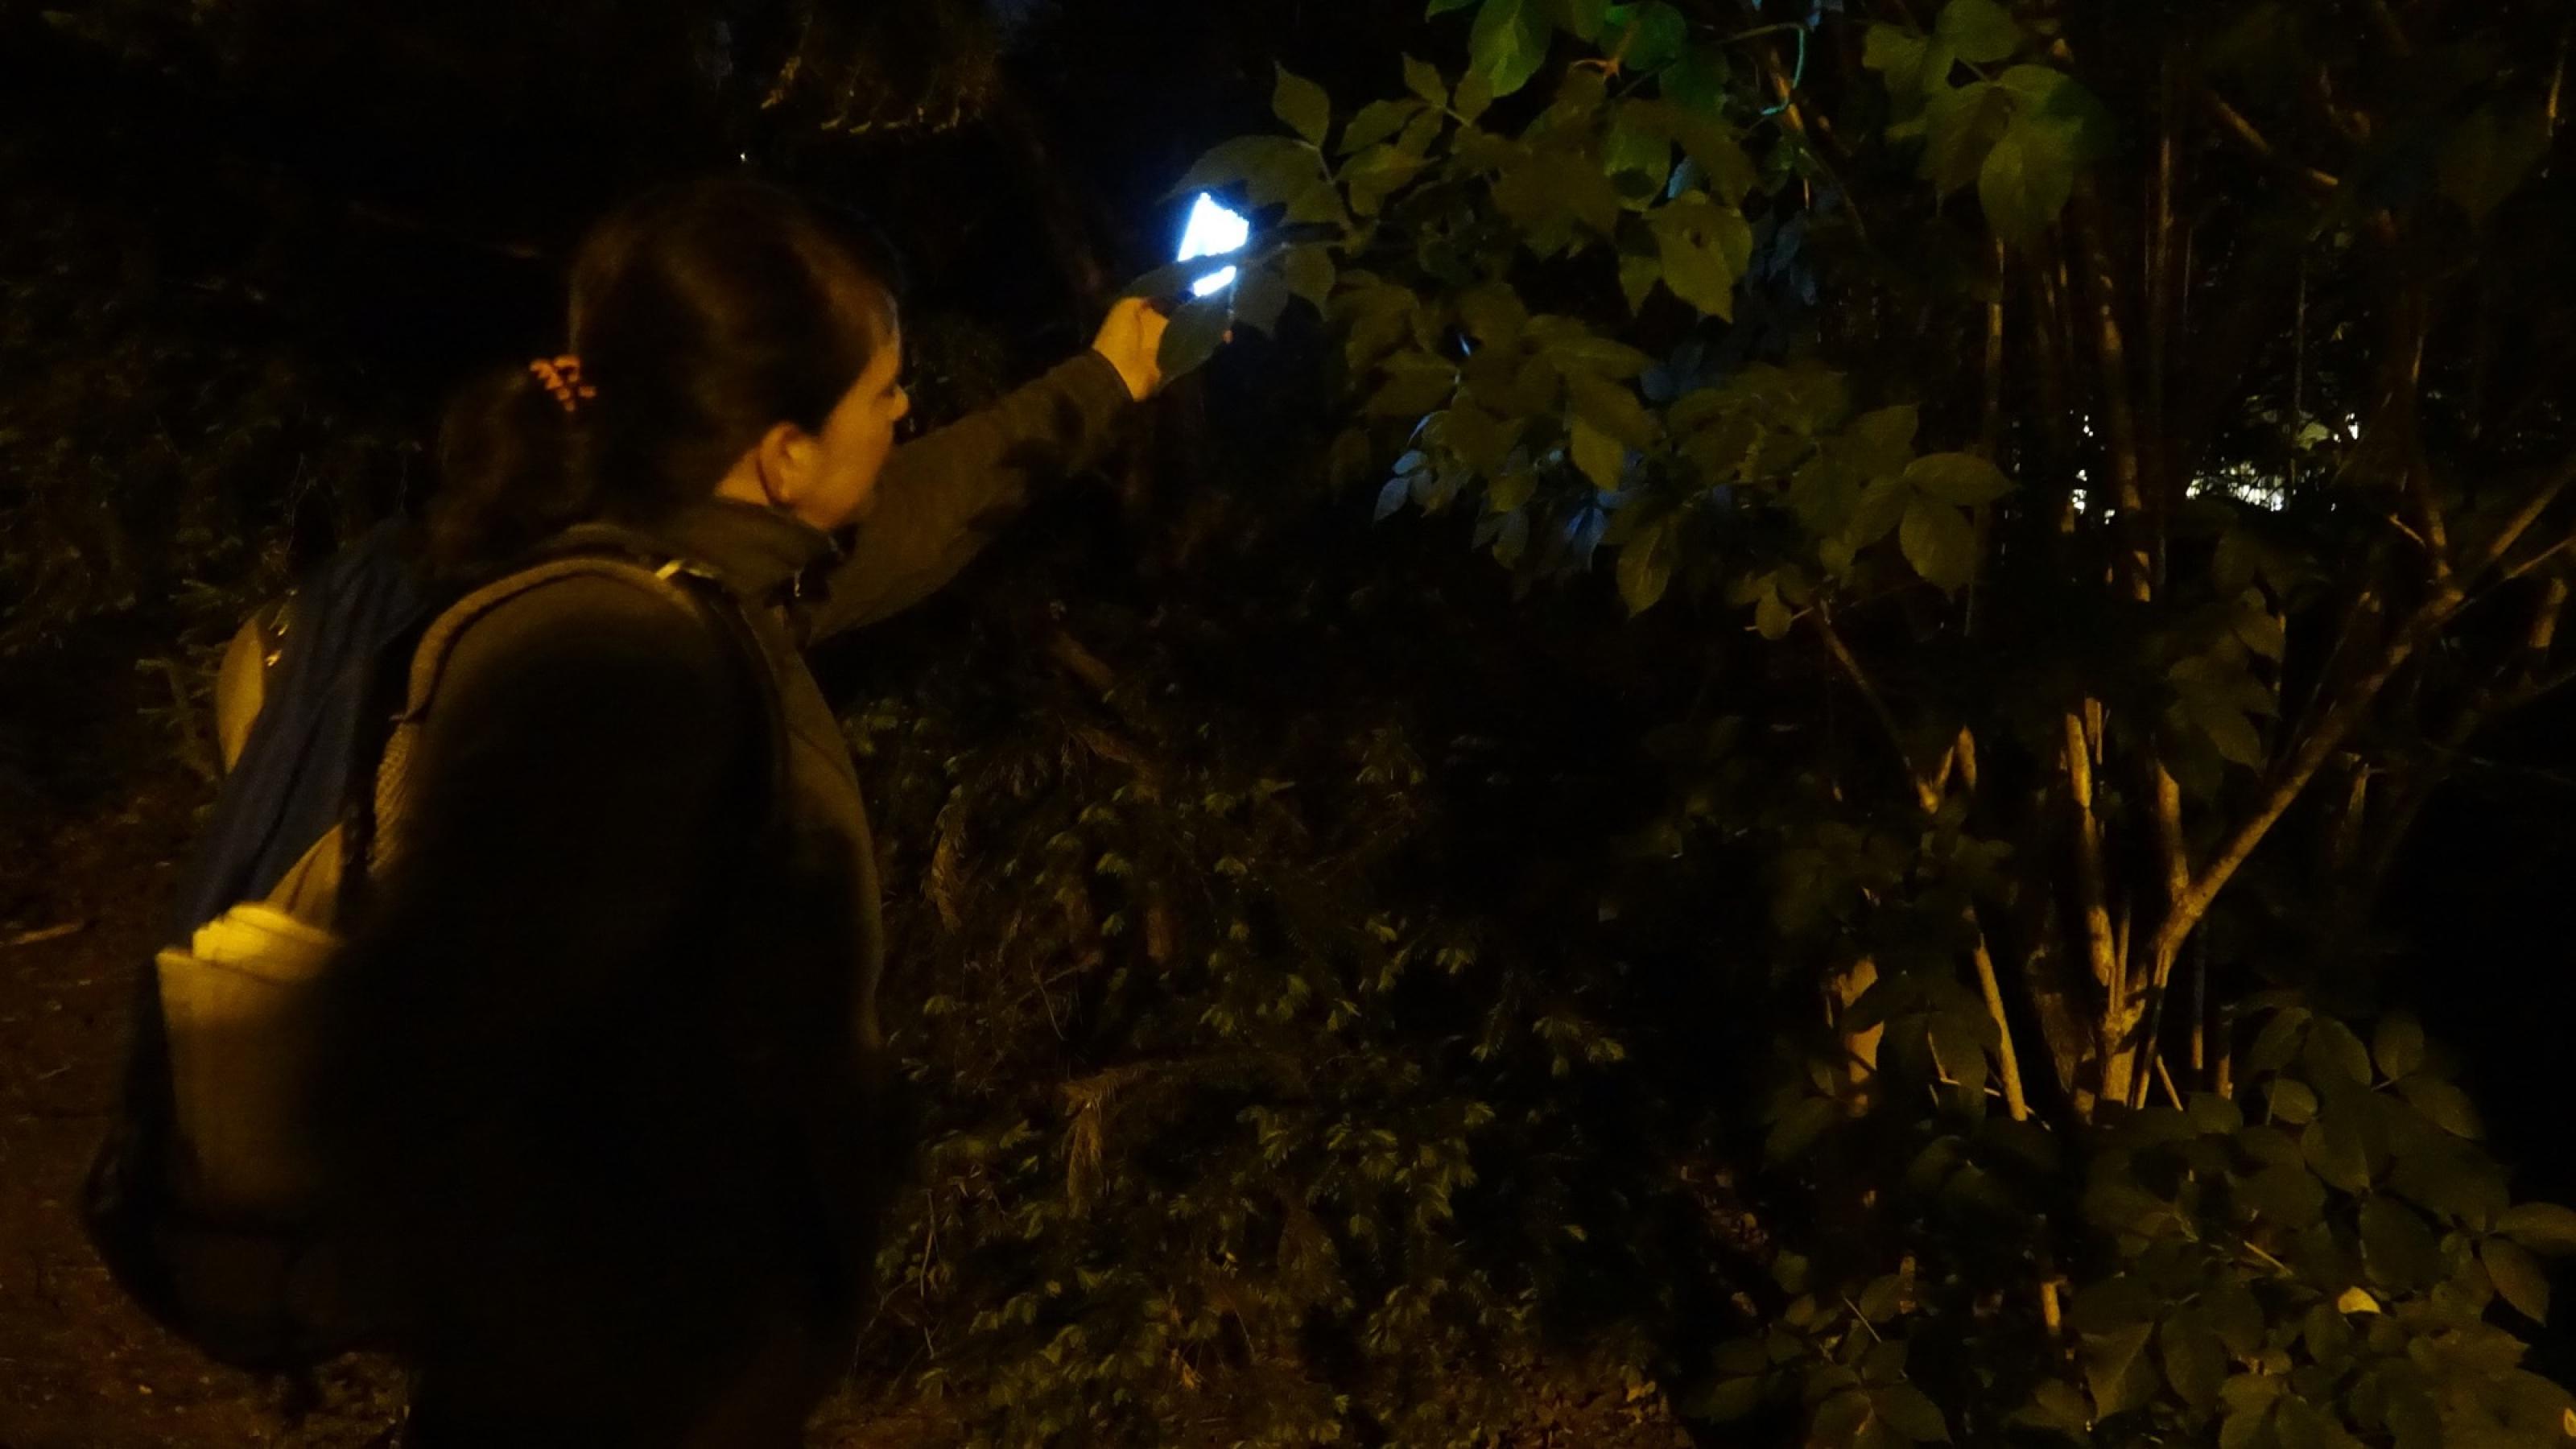 Daniela Friebel steht im Dunkeln zwischen Büschen. Sie hält etwas leuchtendes in der Hand.